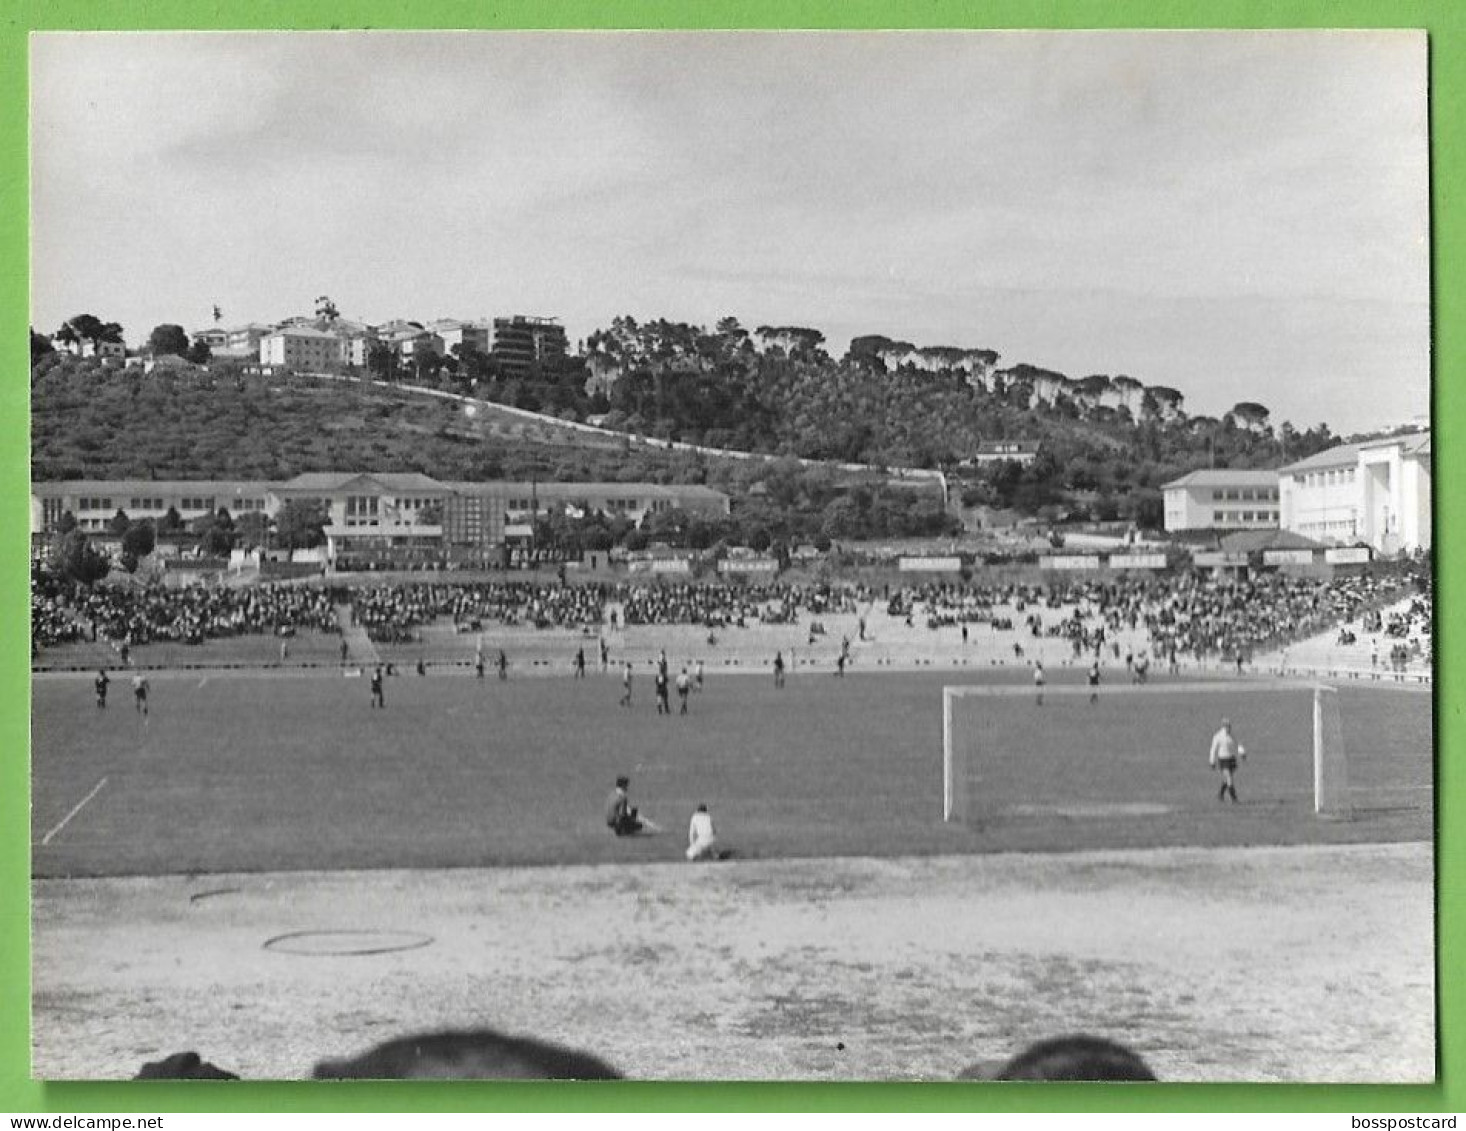 Coimbra - REAL PHOTO - Estádio De Futebol Da Académica - Stadium - Football - Portugal - Stadi